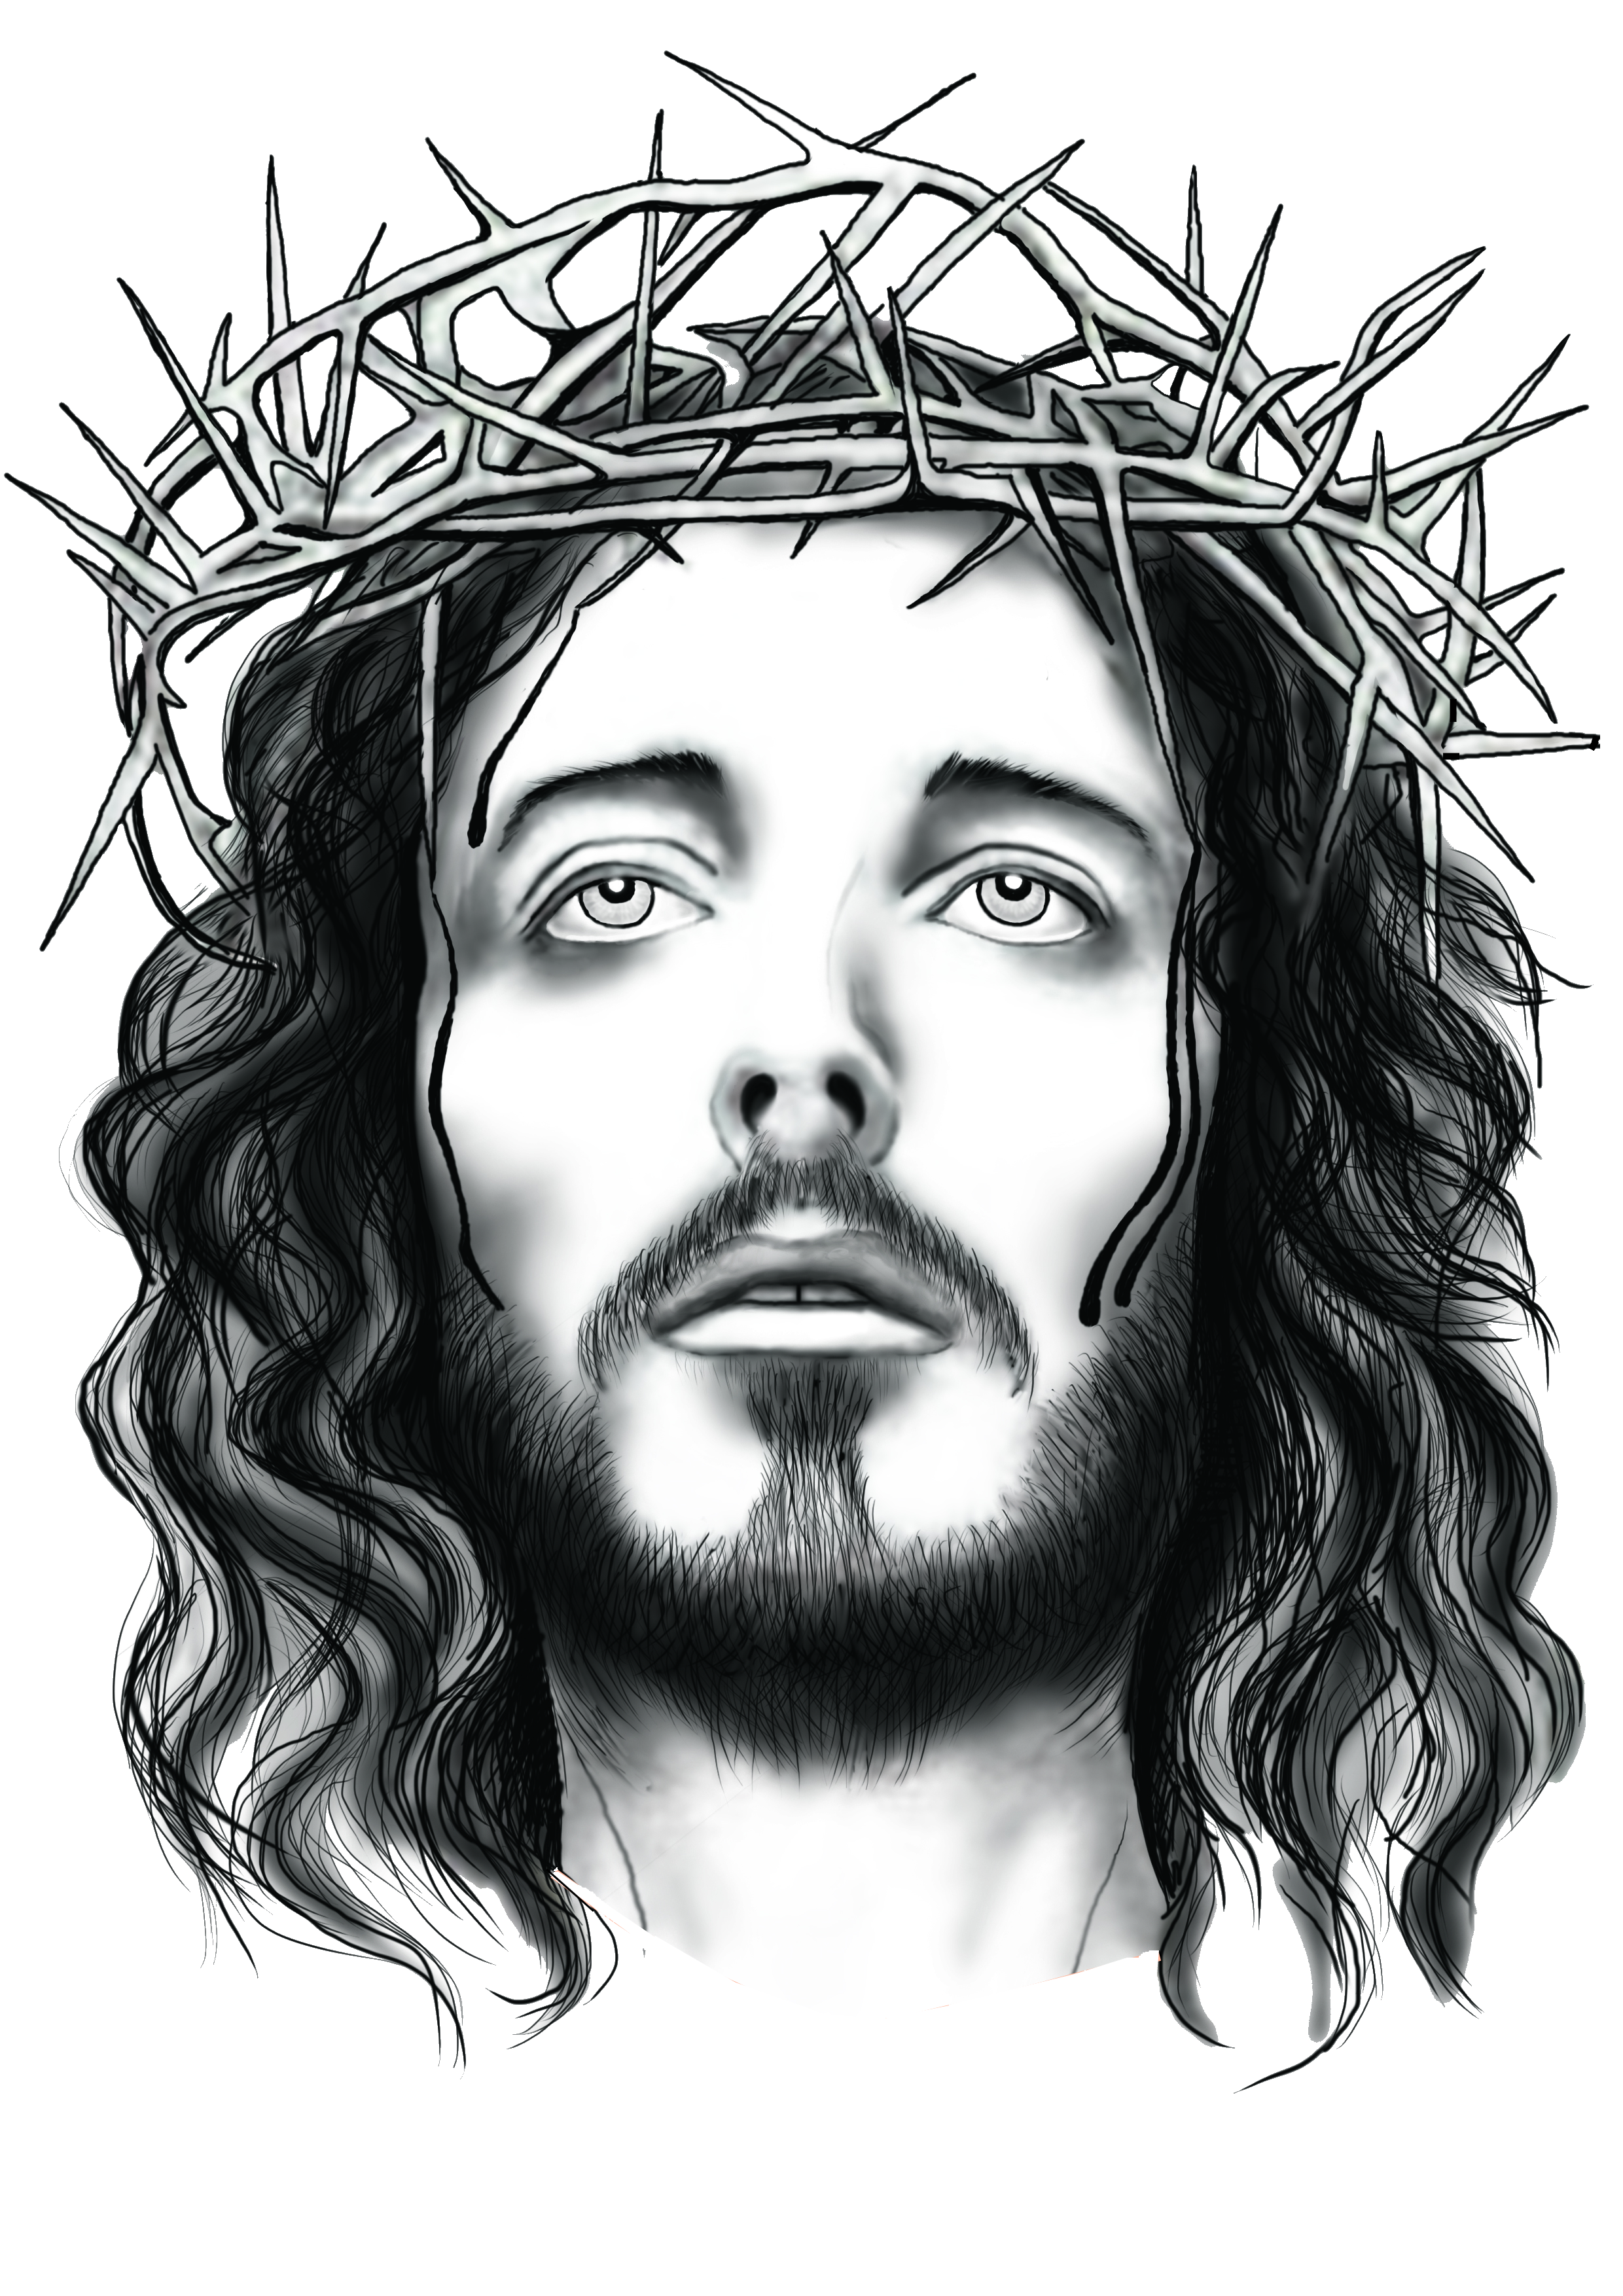 PNG Jesus Face Transparent Jesus Face.PNG Images. | PlusPNG
